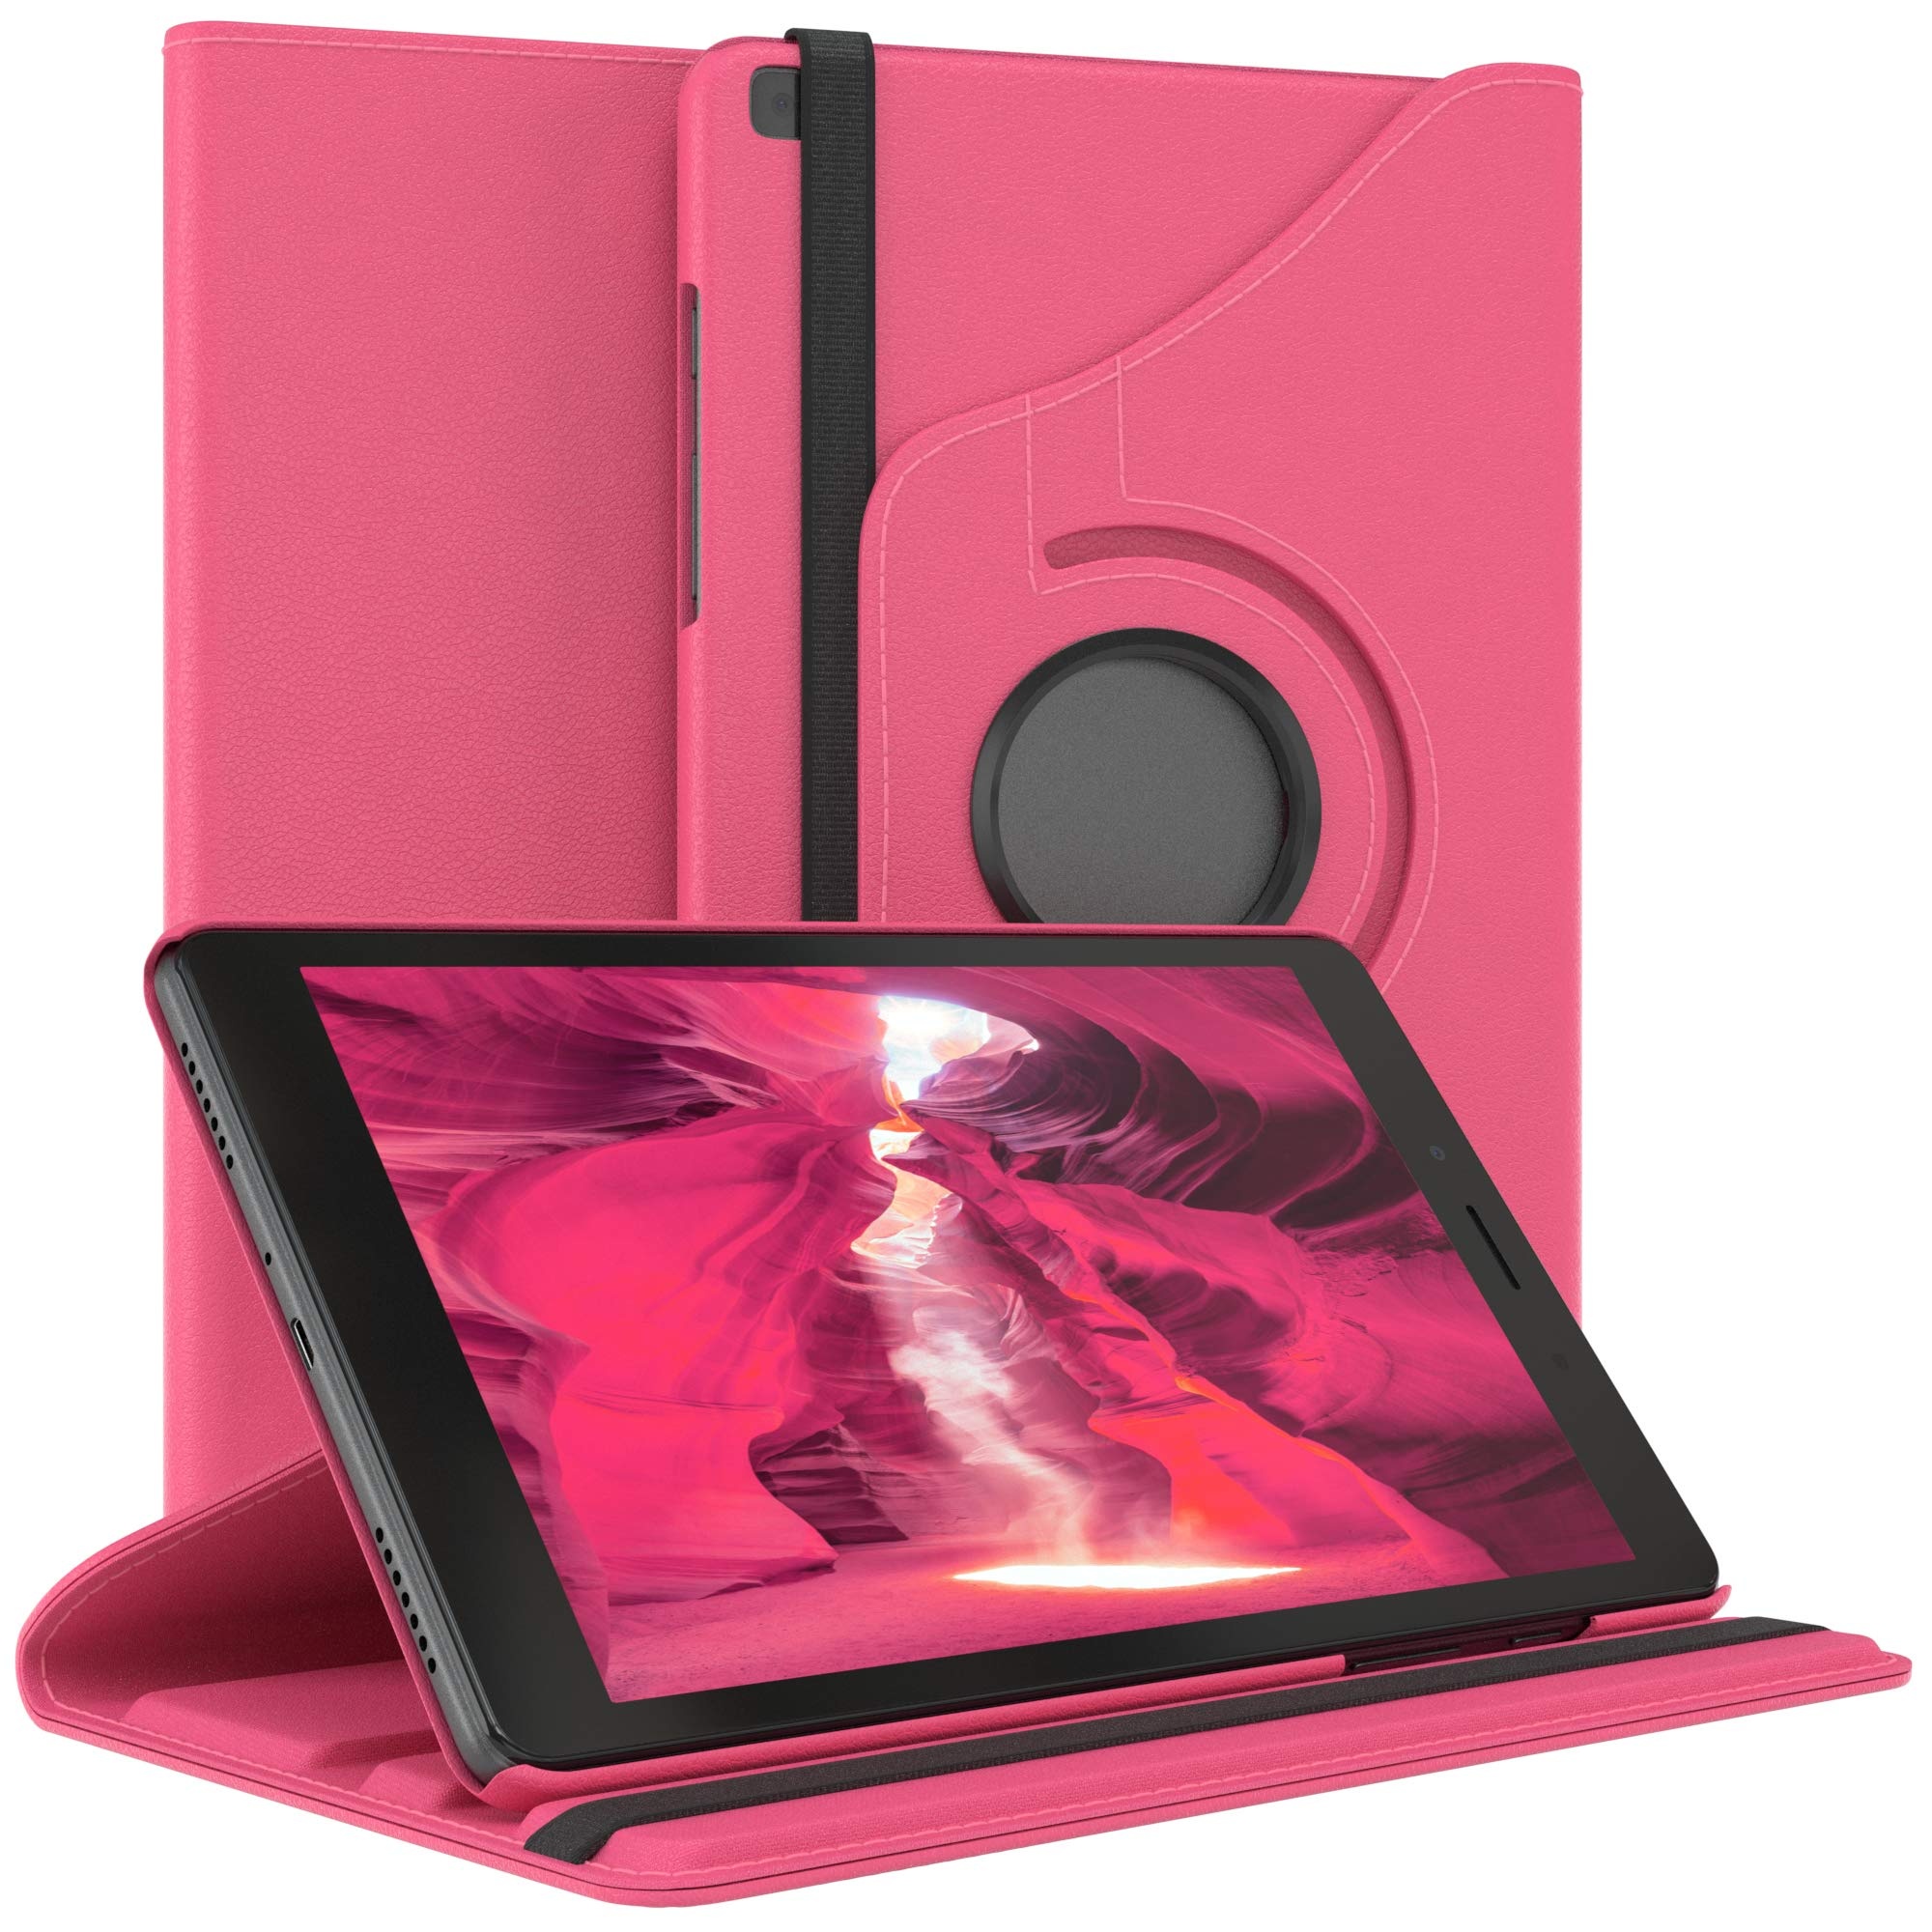 EAZY CASE - Tablet Hülle für Samsung Galaxy Tab A 8.0 (2019) Schutzhülle 8 Zoll Smart Cover Tablet Case Rotationcase zum Aufstellen Klapphülle 360° drehbar mit Standfunktion Tasche Kunstleder Pink